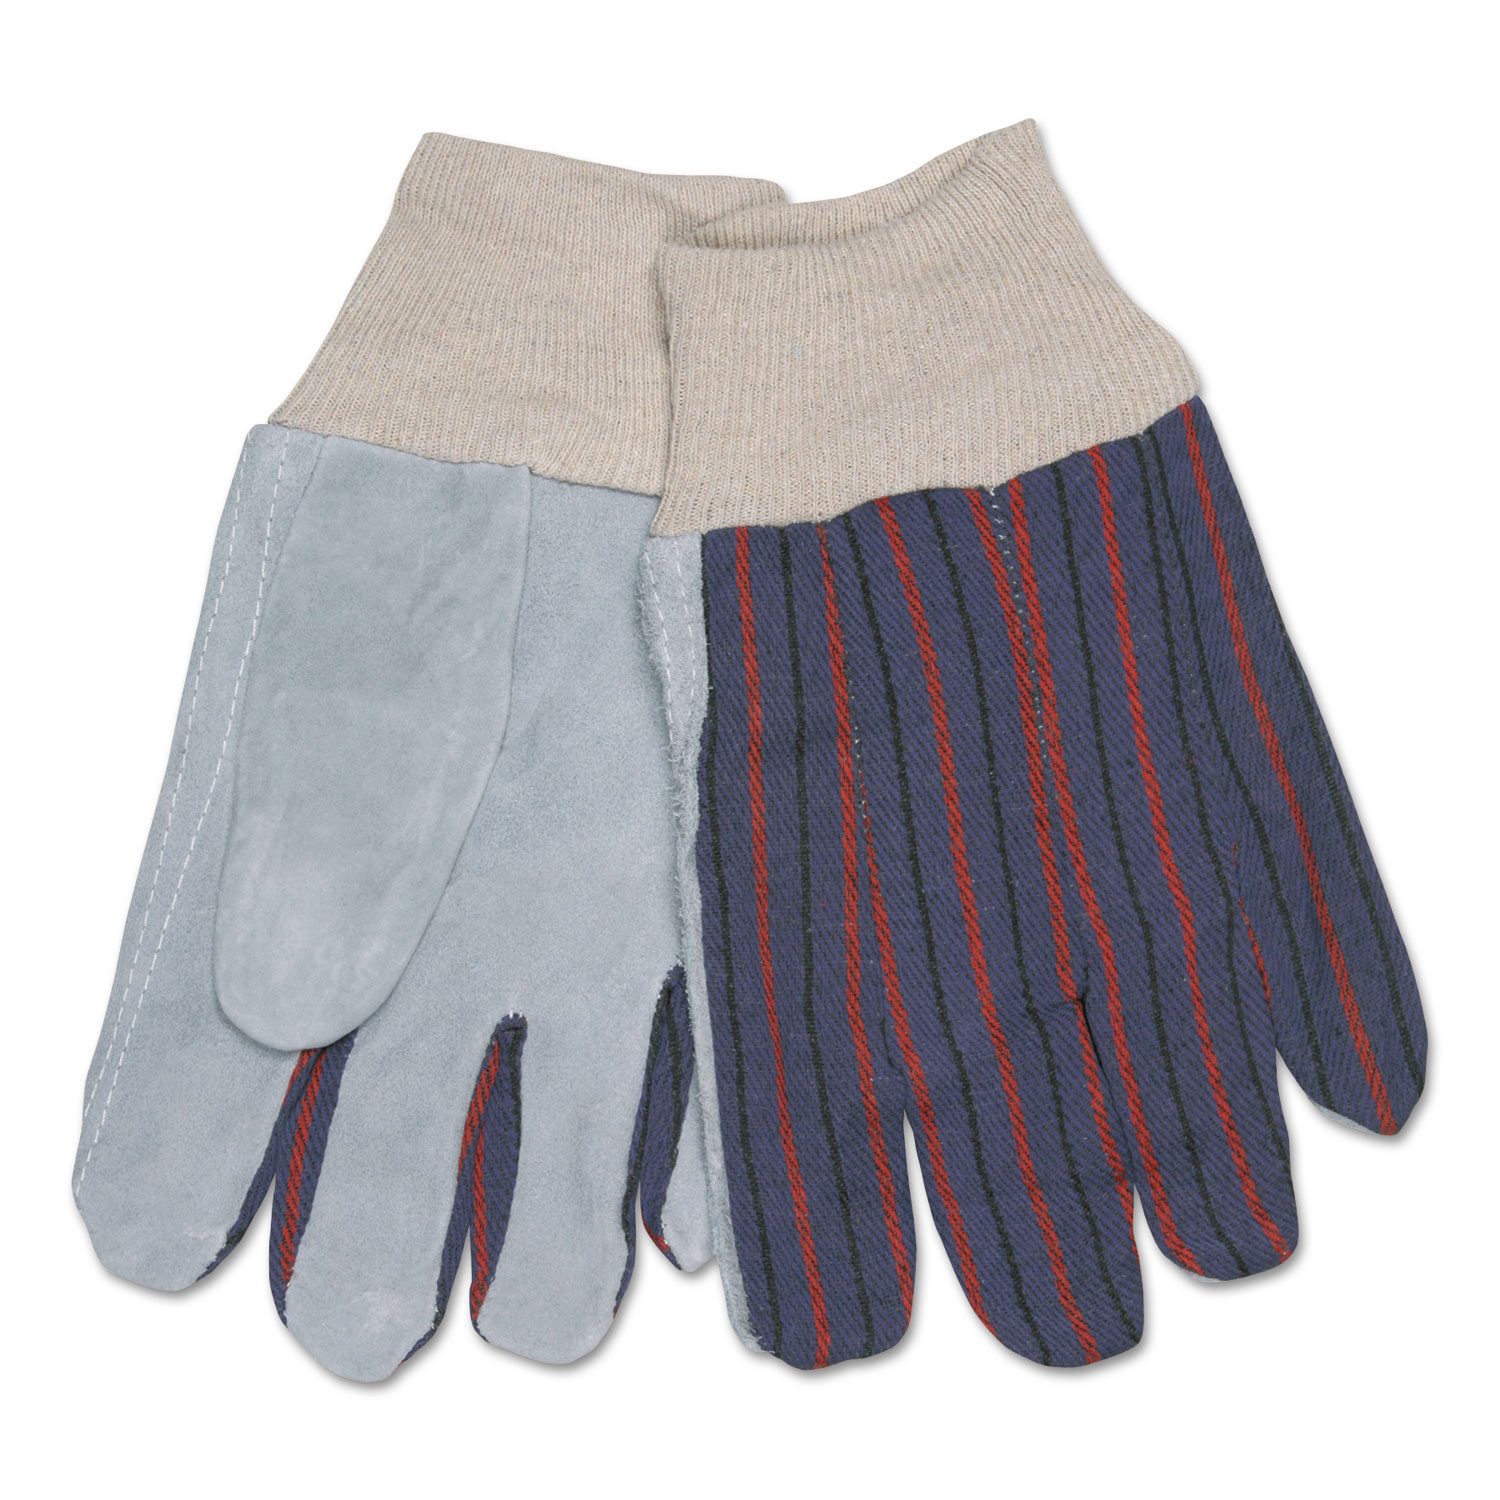  MCR Safety 1040 1040 Leather Palm Glove, Gray/White, Large, Dozen (CRW1040) 